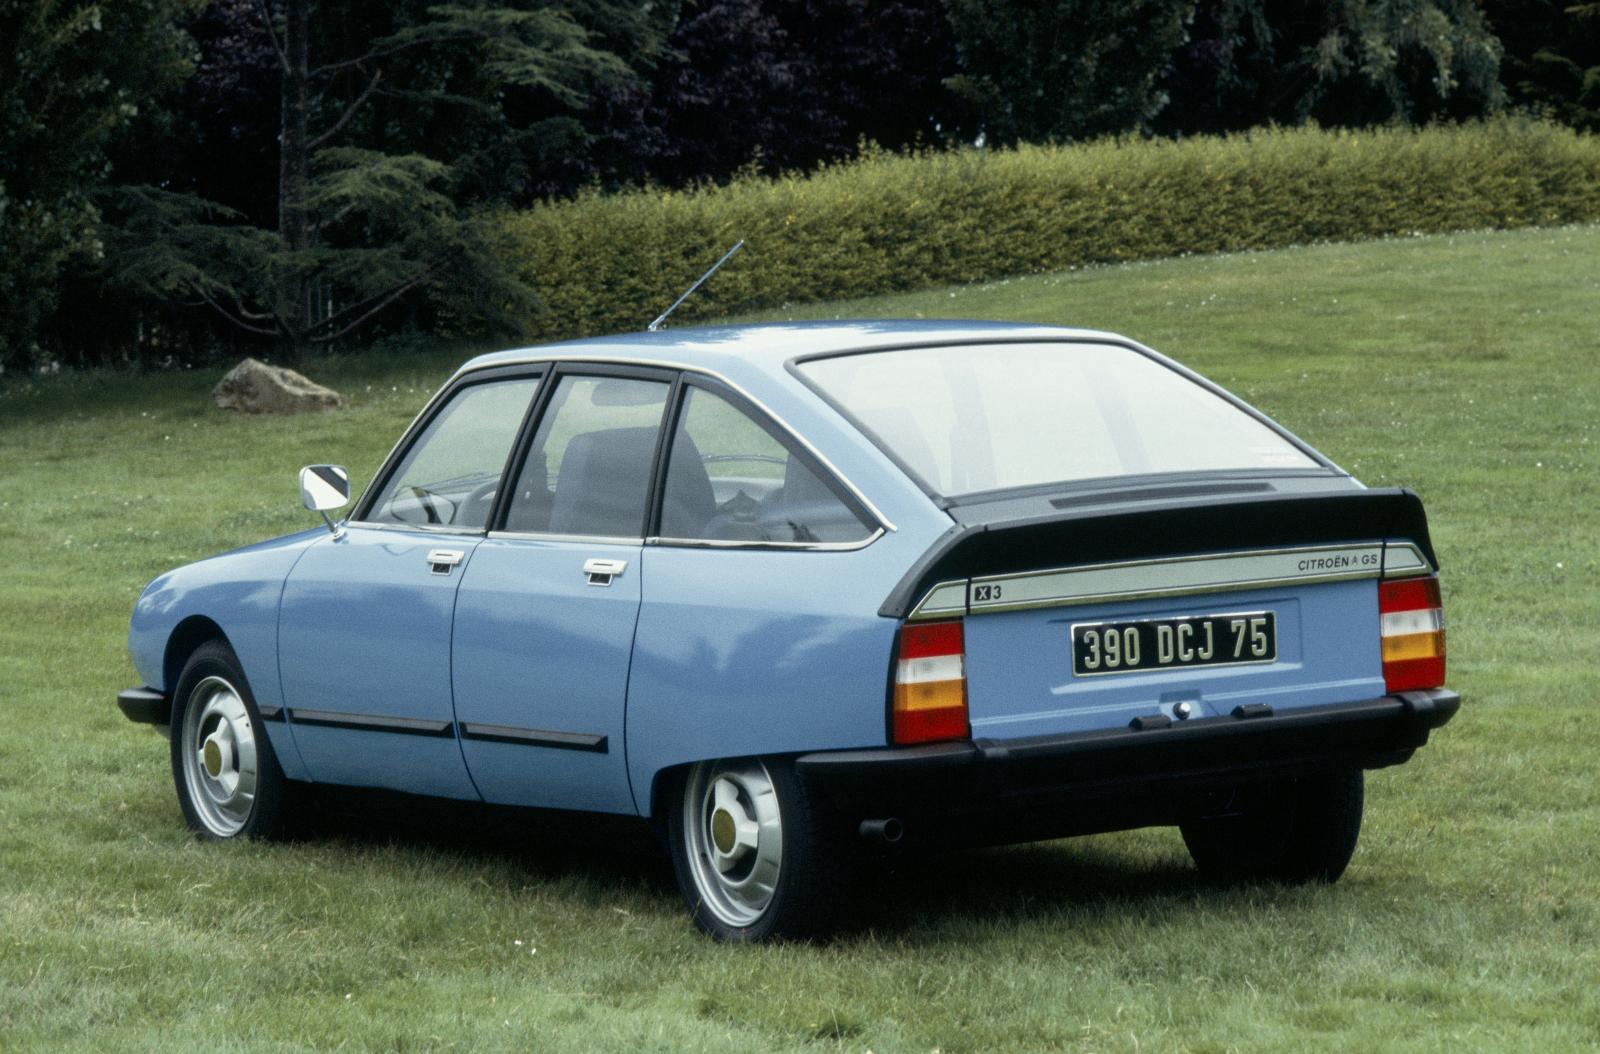 GS X3 1979 rear 3/4 